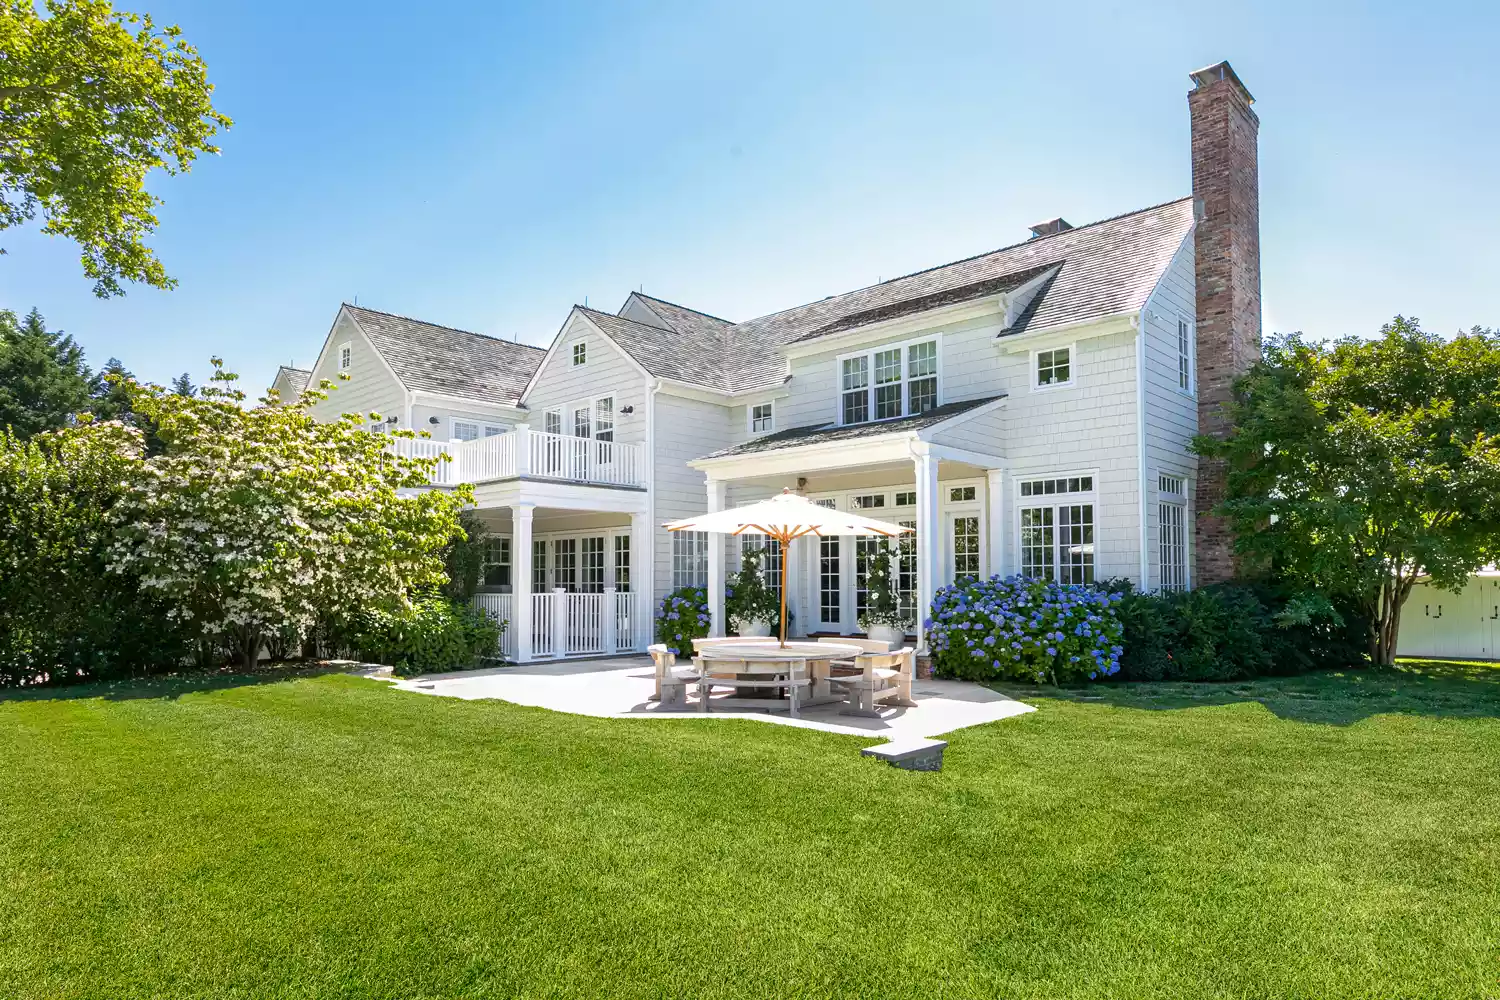 Ο Alec Baldwin ξέρει από σωστό Marketing! Πουλά το σπίτι του στο Hamptons μέσω ενός video